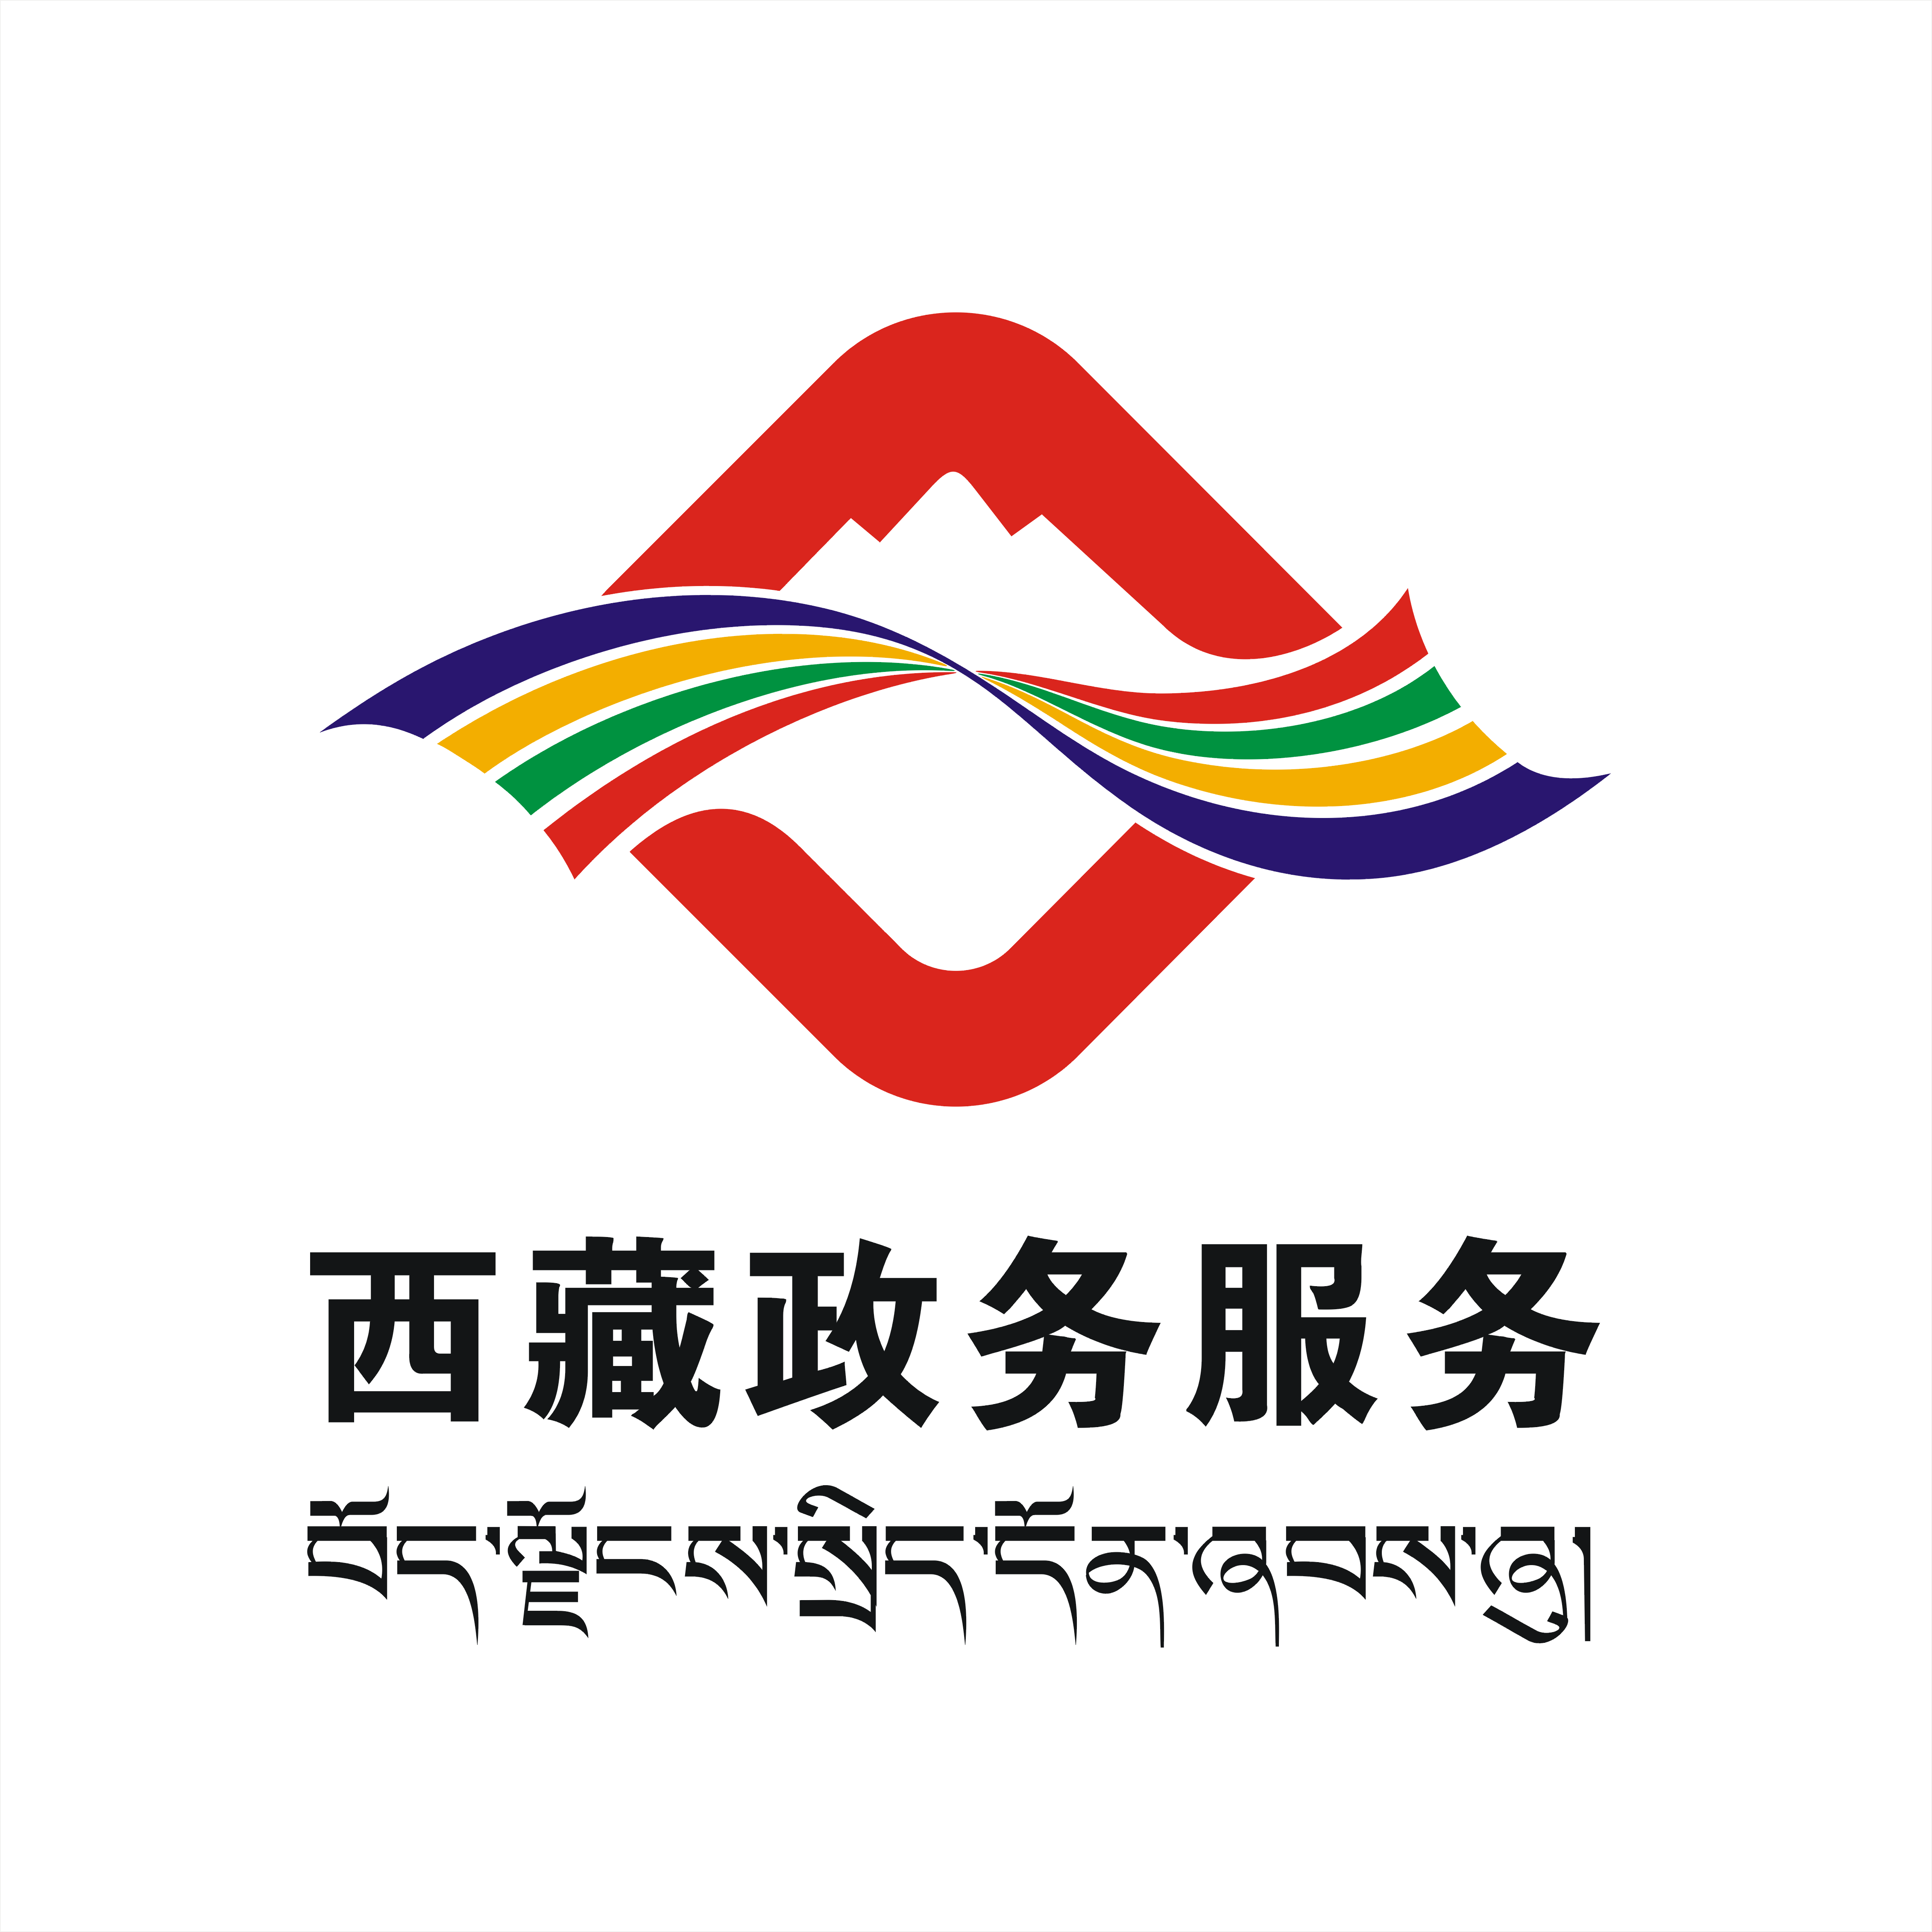 西藏政务服务logo获奖设计作品公示